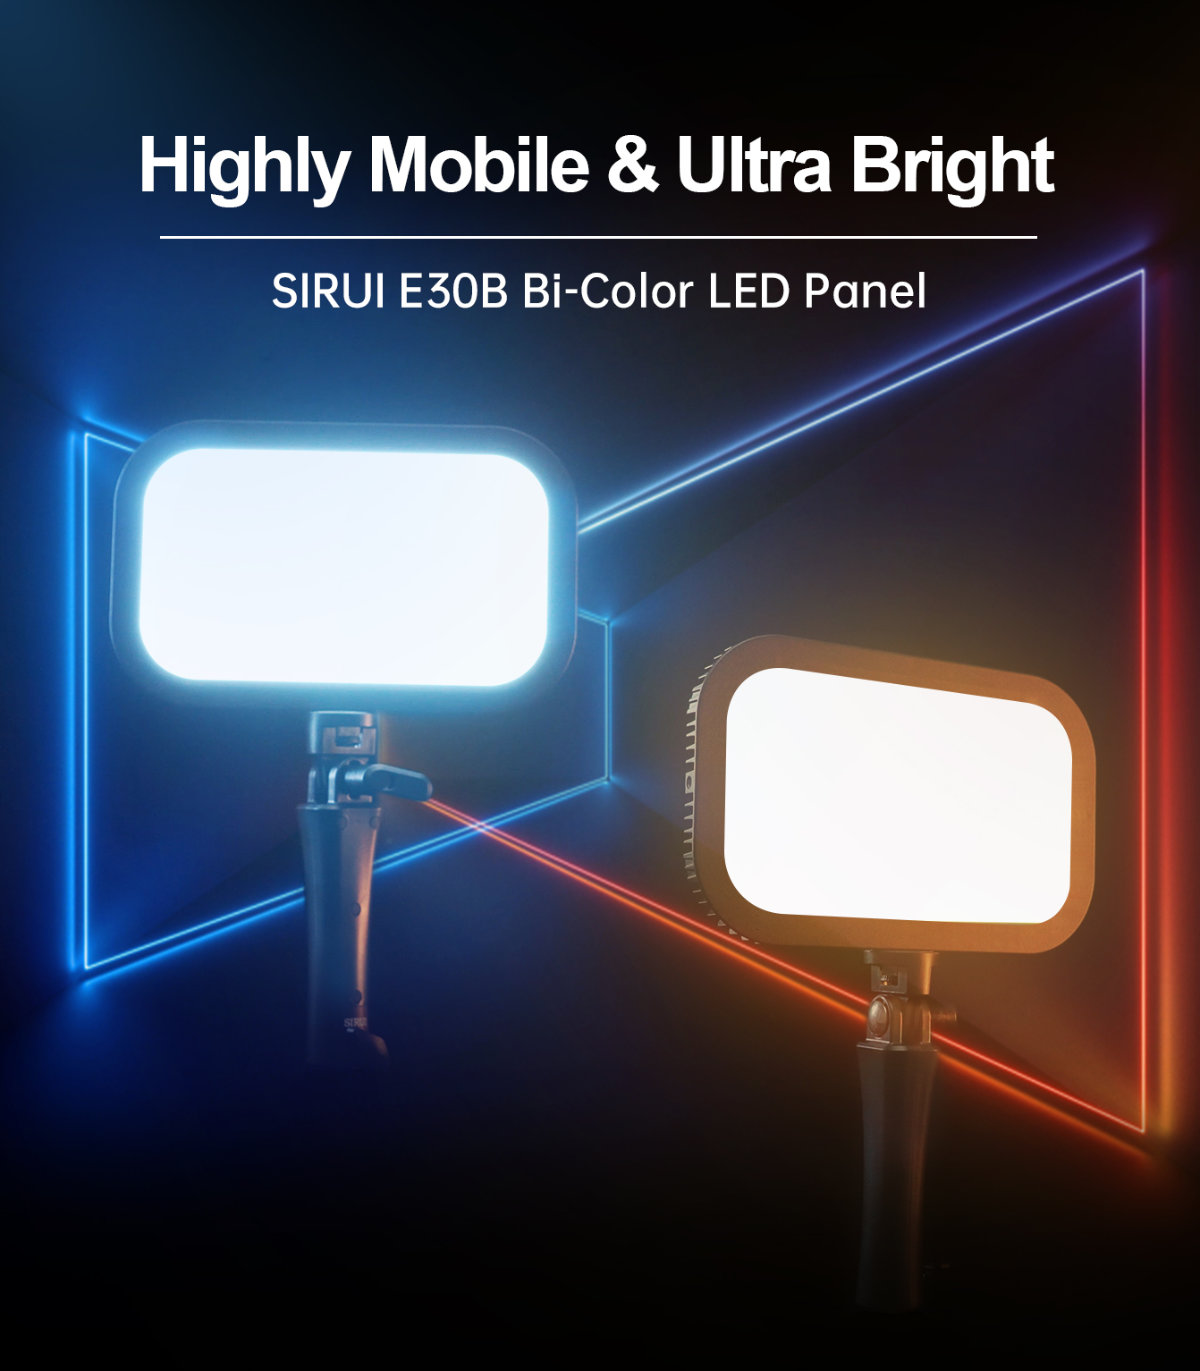 Sirui E30B Bi-Color LED Panel Detail